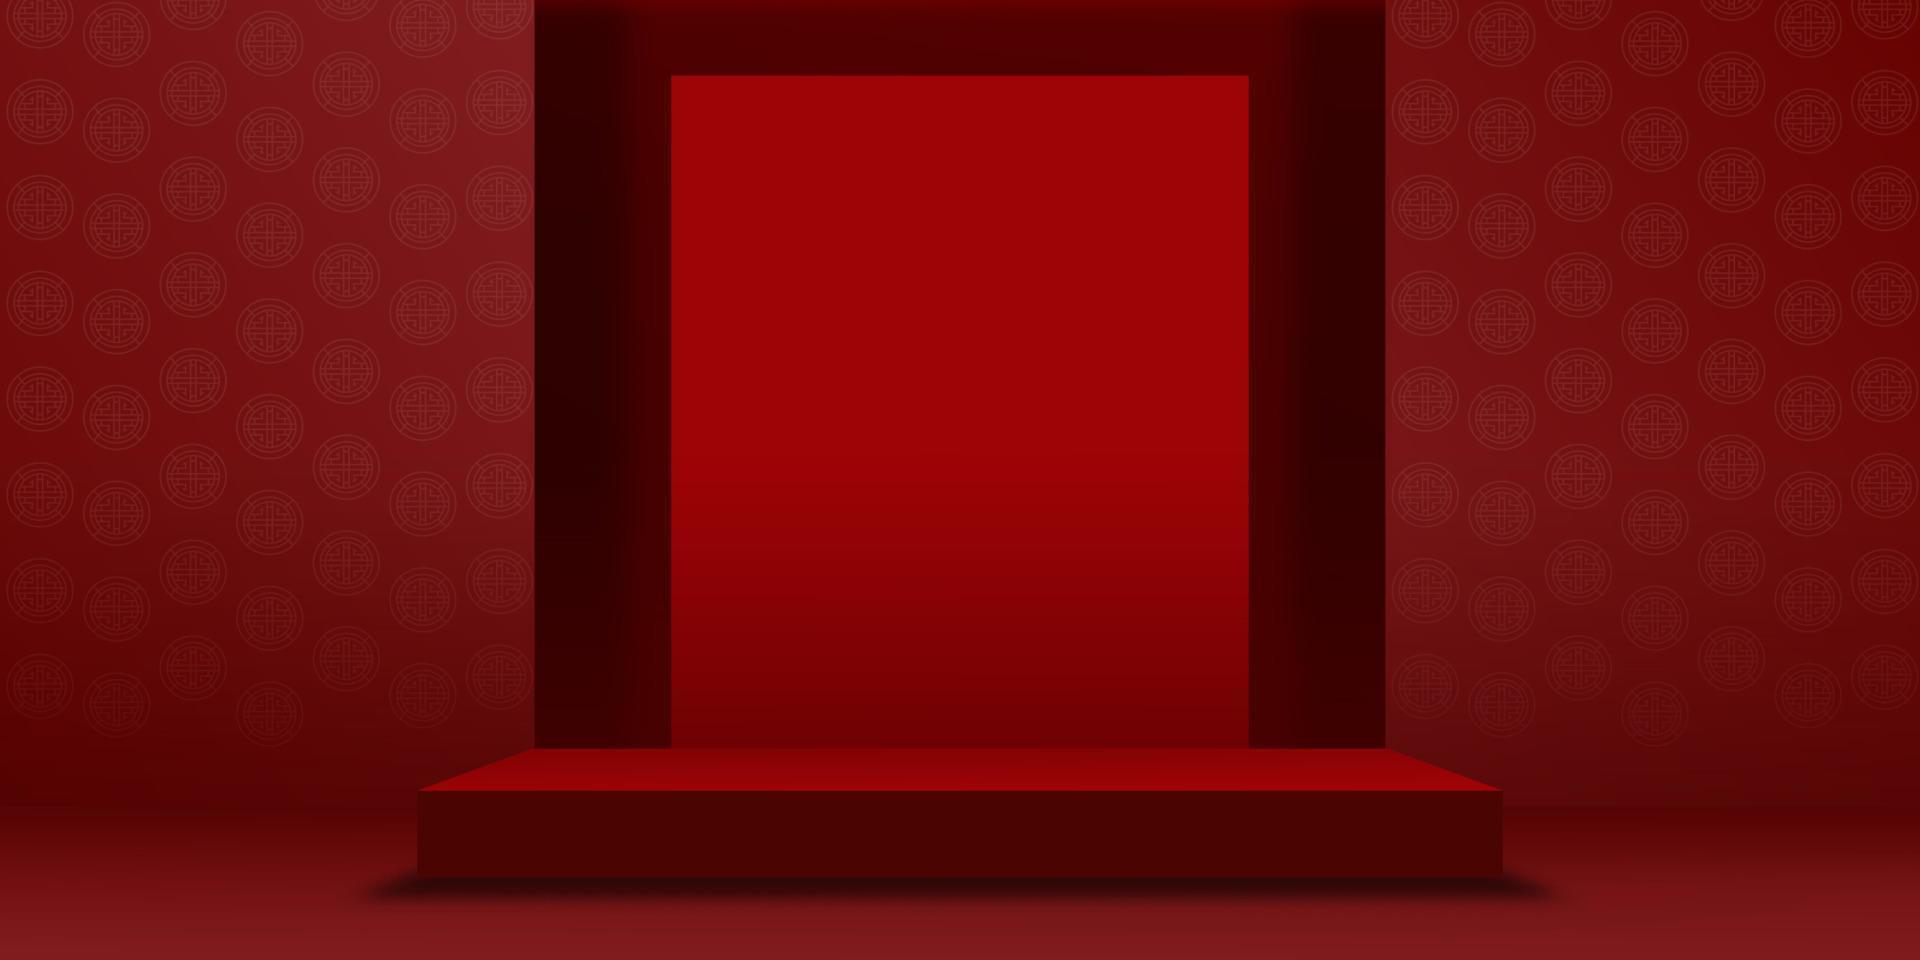 sfondo del capodanno cinese, podio della sala studio con carta lunare tagliata su sfondo rosso della parete, illustrazione vettoriale 3d galleria vuota con espositore o scaffale, design banner per la presentazione dei prodotti